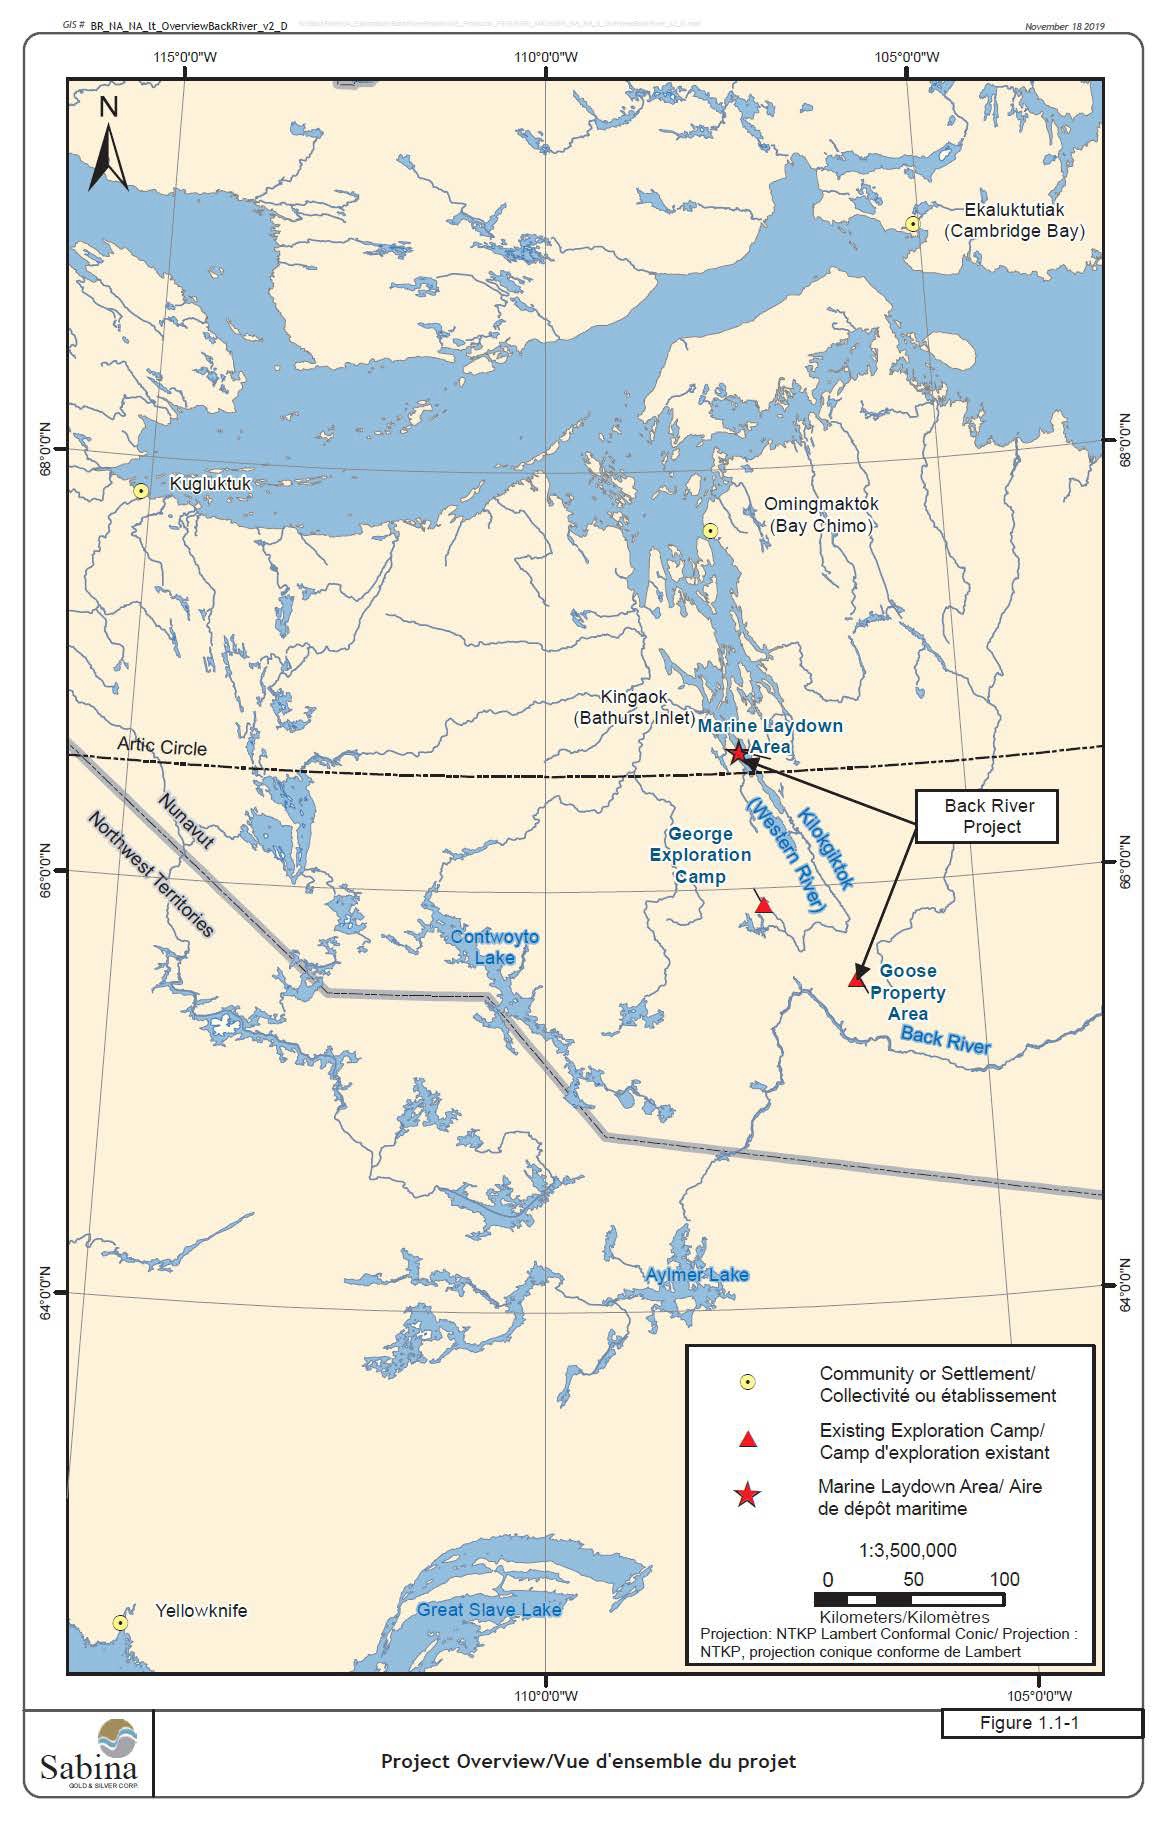 La figure 1 est une carte à l'échelle 1: 3 500 000 montrant l'emplacement général du projet minier Back River au Nunavut – Description ci-dessous